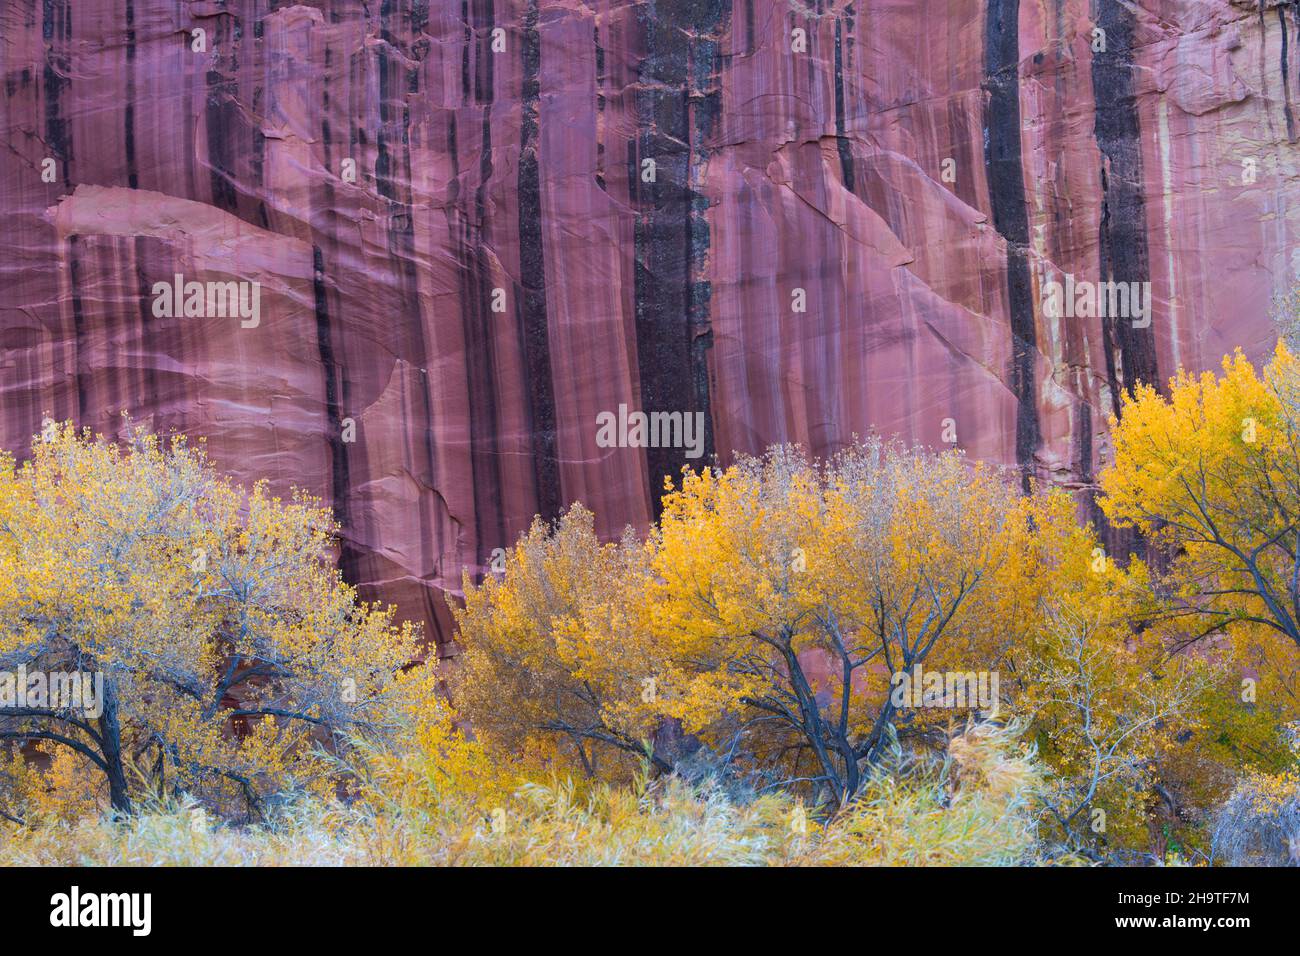 Fruita, Parque Nacional Capitol Reef, Utah, Estados Unidos. Los árboles dorados de madera de algodón se ven enanos por la pared de arenisca rayada del cañón del río Fremont, en otoño. Foto de stock